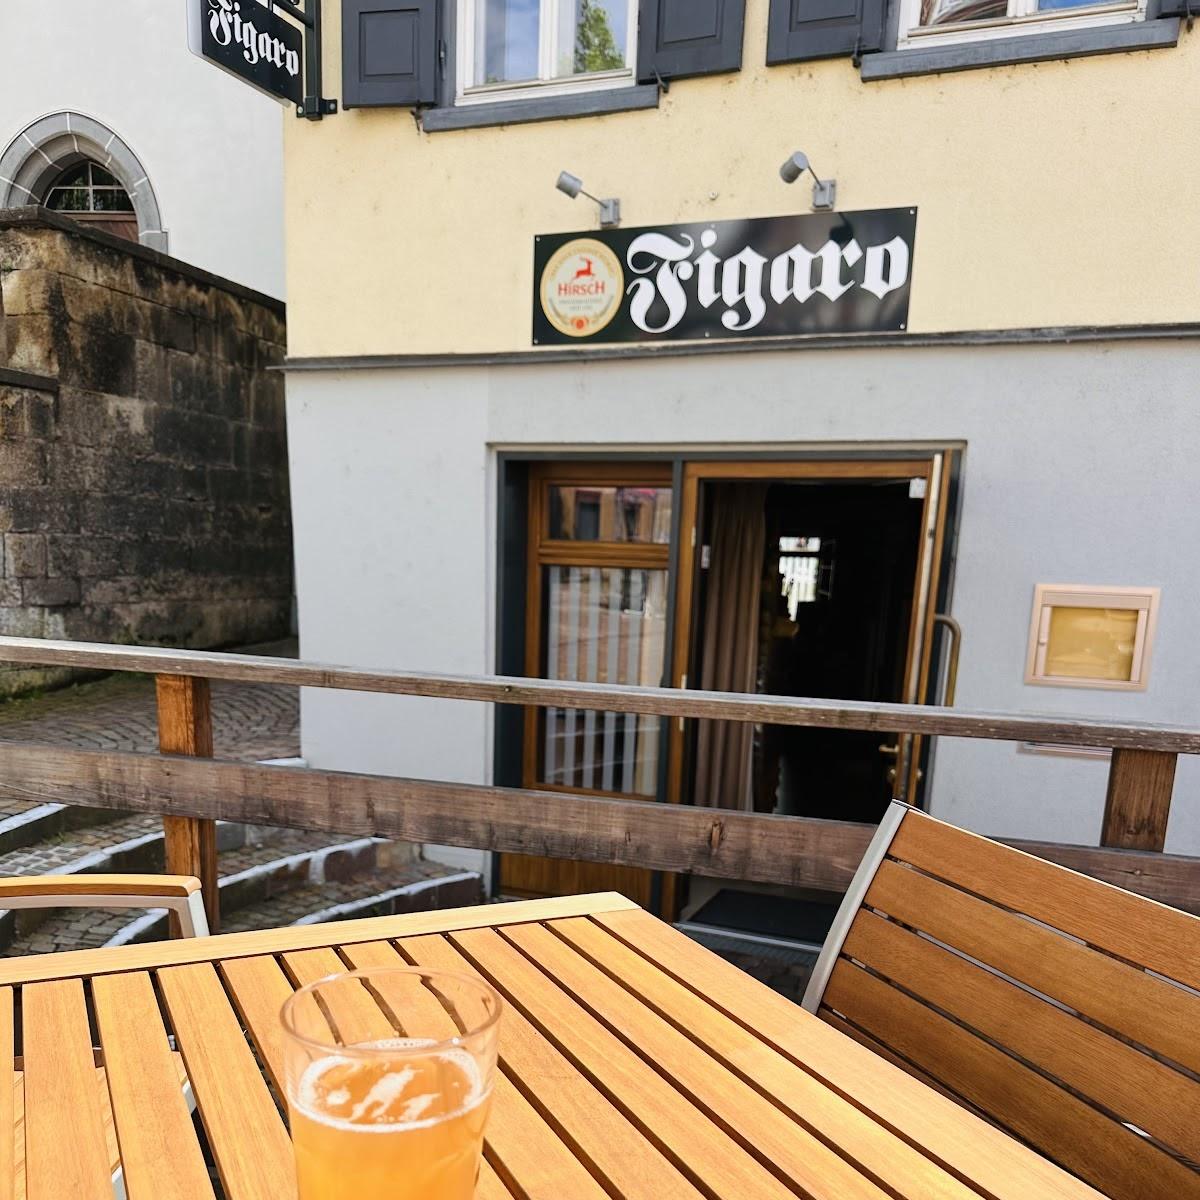 Restaurant "FIGARO Restaurant Bar Lounge" in Plochingen